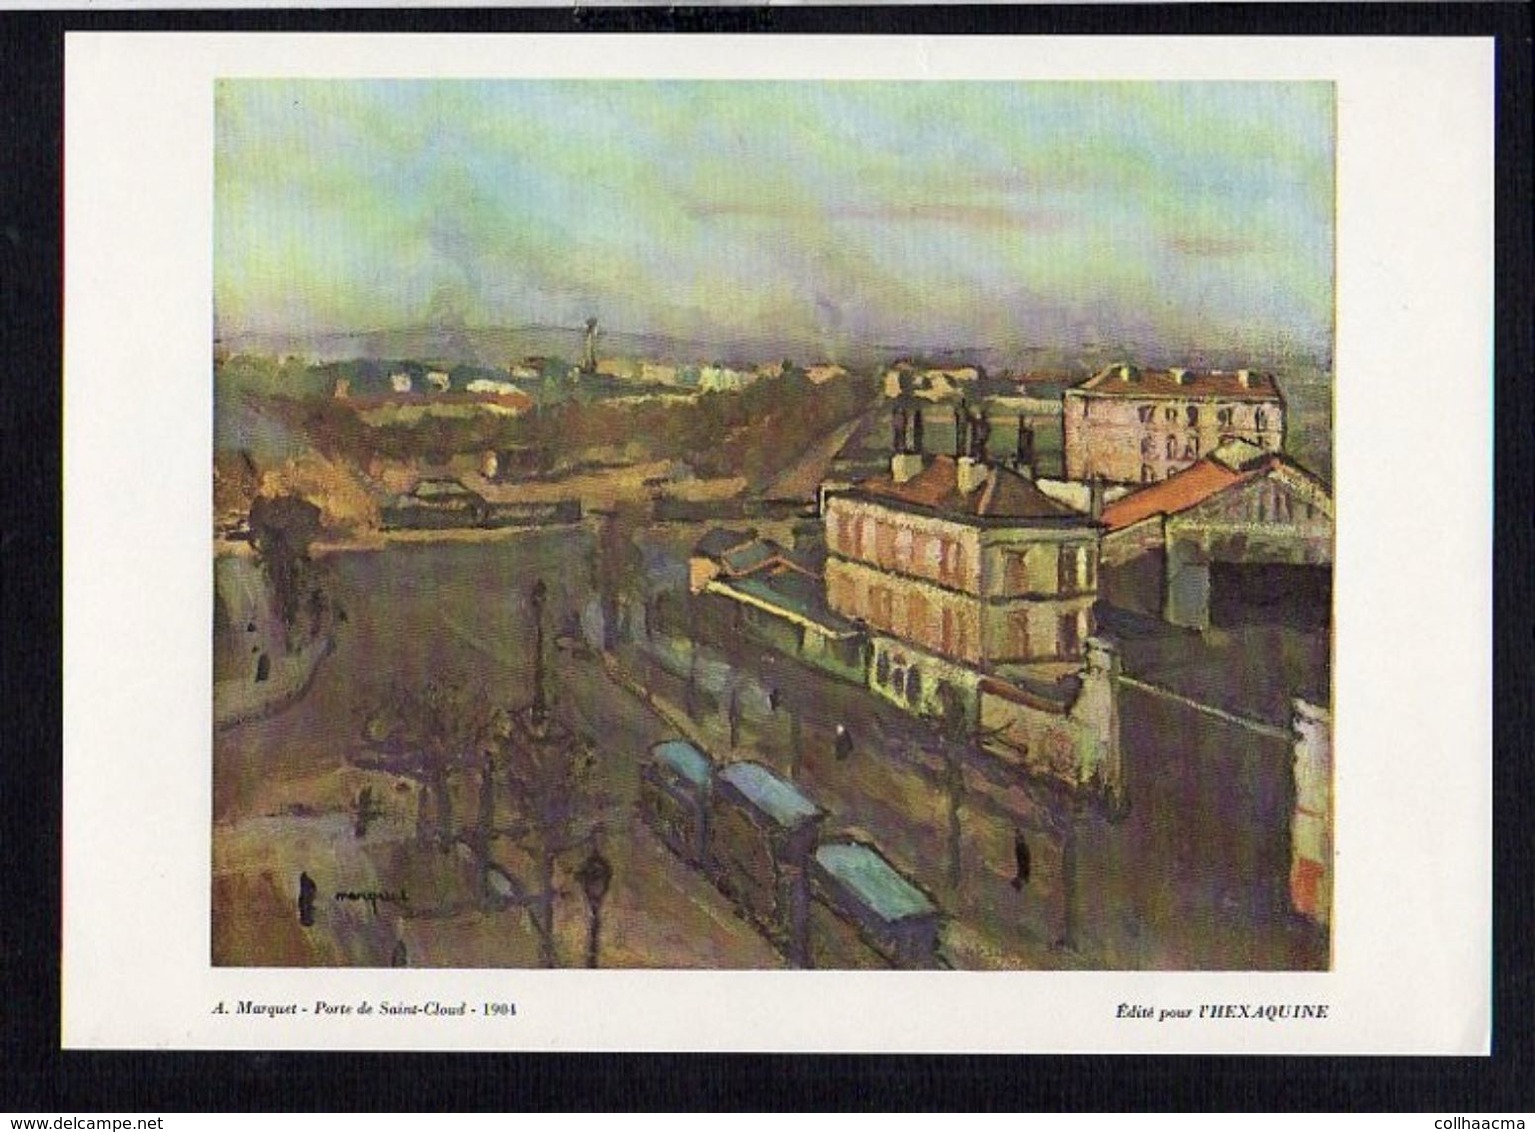 Art / Publicité Laboratoire Du Gomenol / " ( Paris) Porte De Saint Cloud 1904" De A. Marquet - Advertising